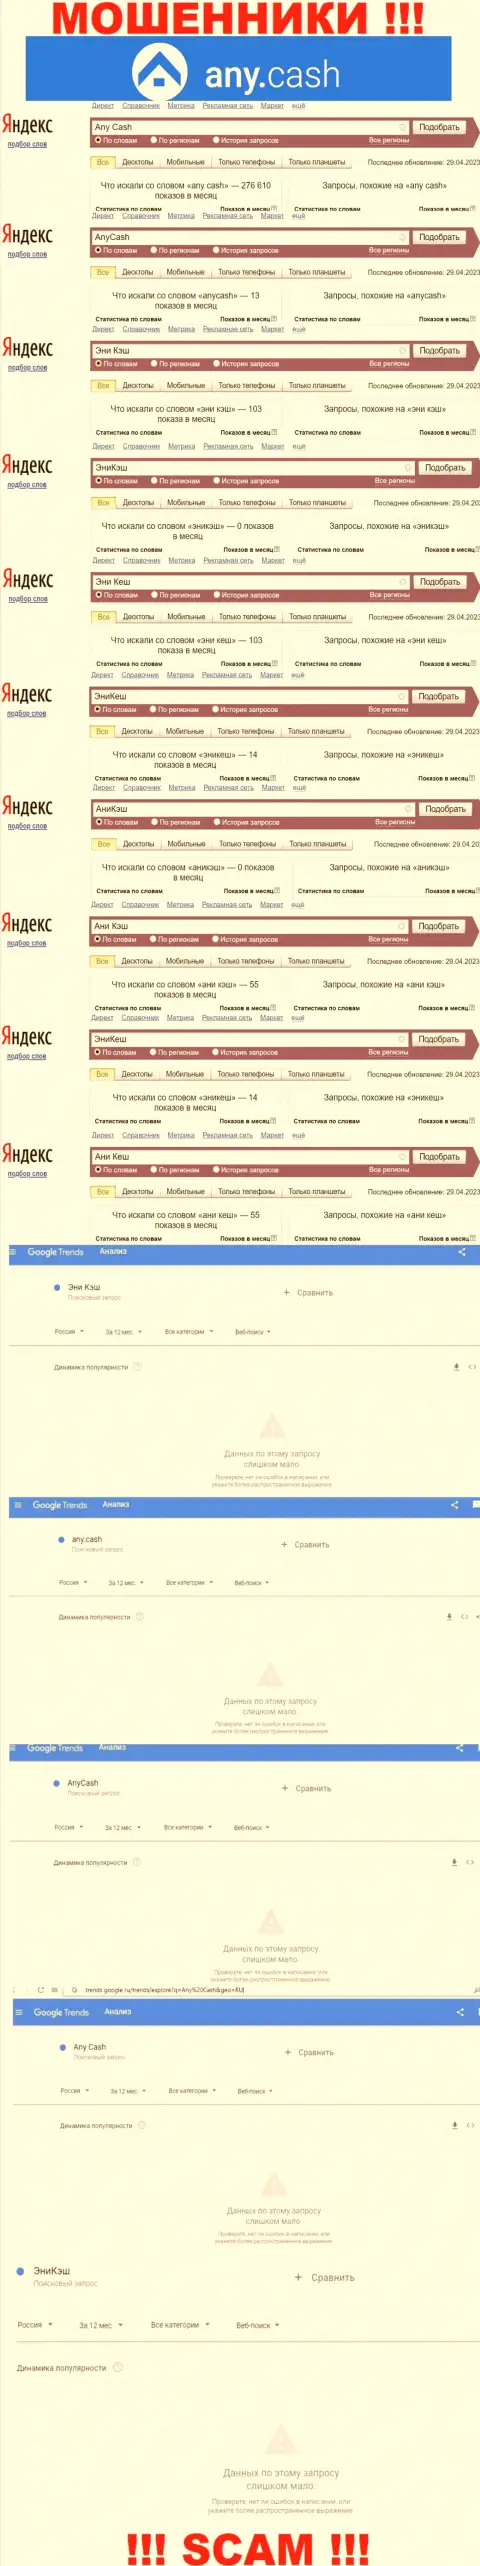 Скрин результата online-запросов по противозаконно действующей организации Any Cash